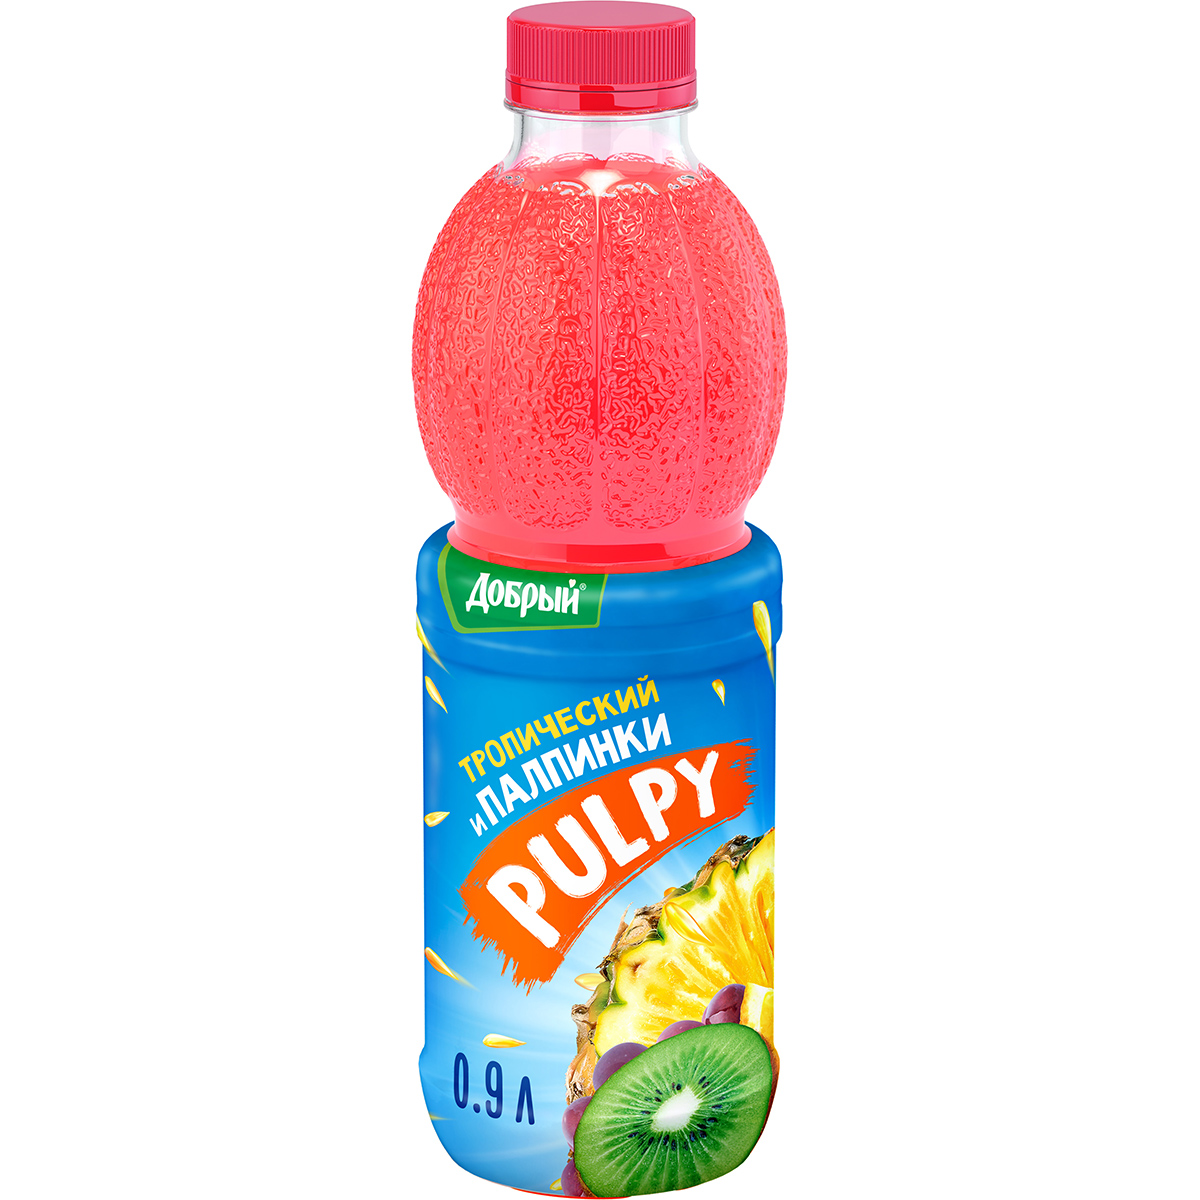 Напиток Pulpy сокосодержащий Тропический с мякотью 0,9 л напиток сокосодержащий pulpy свежая мякоть апельсин 0 45 л